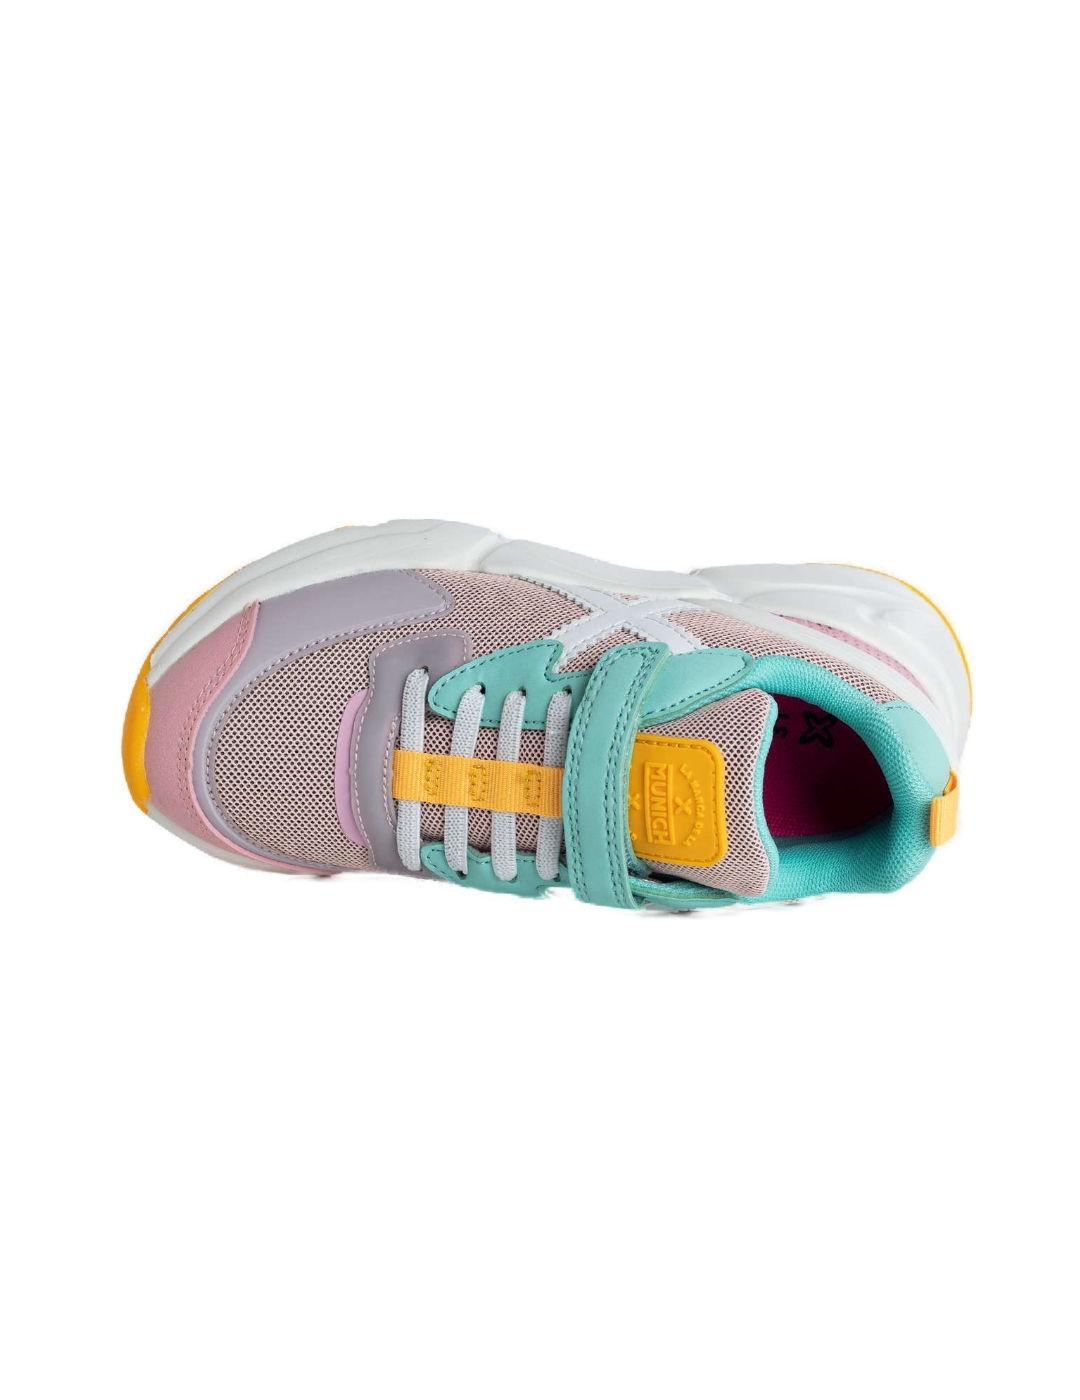 Zapatillas Munich mini Track Vco multicolor para niña